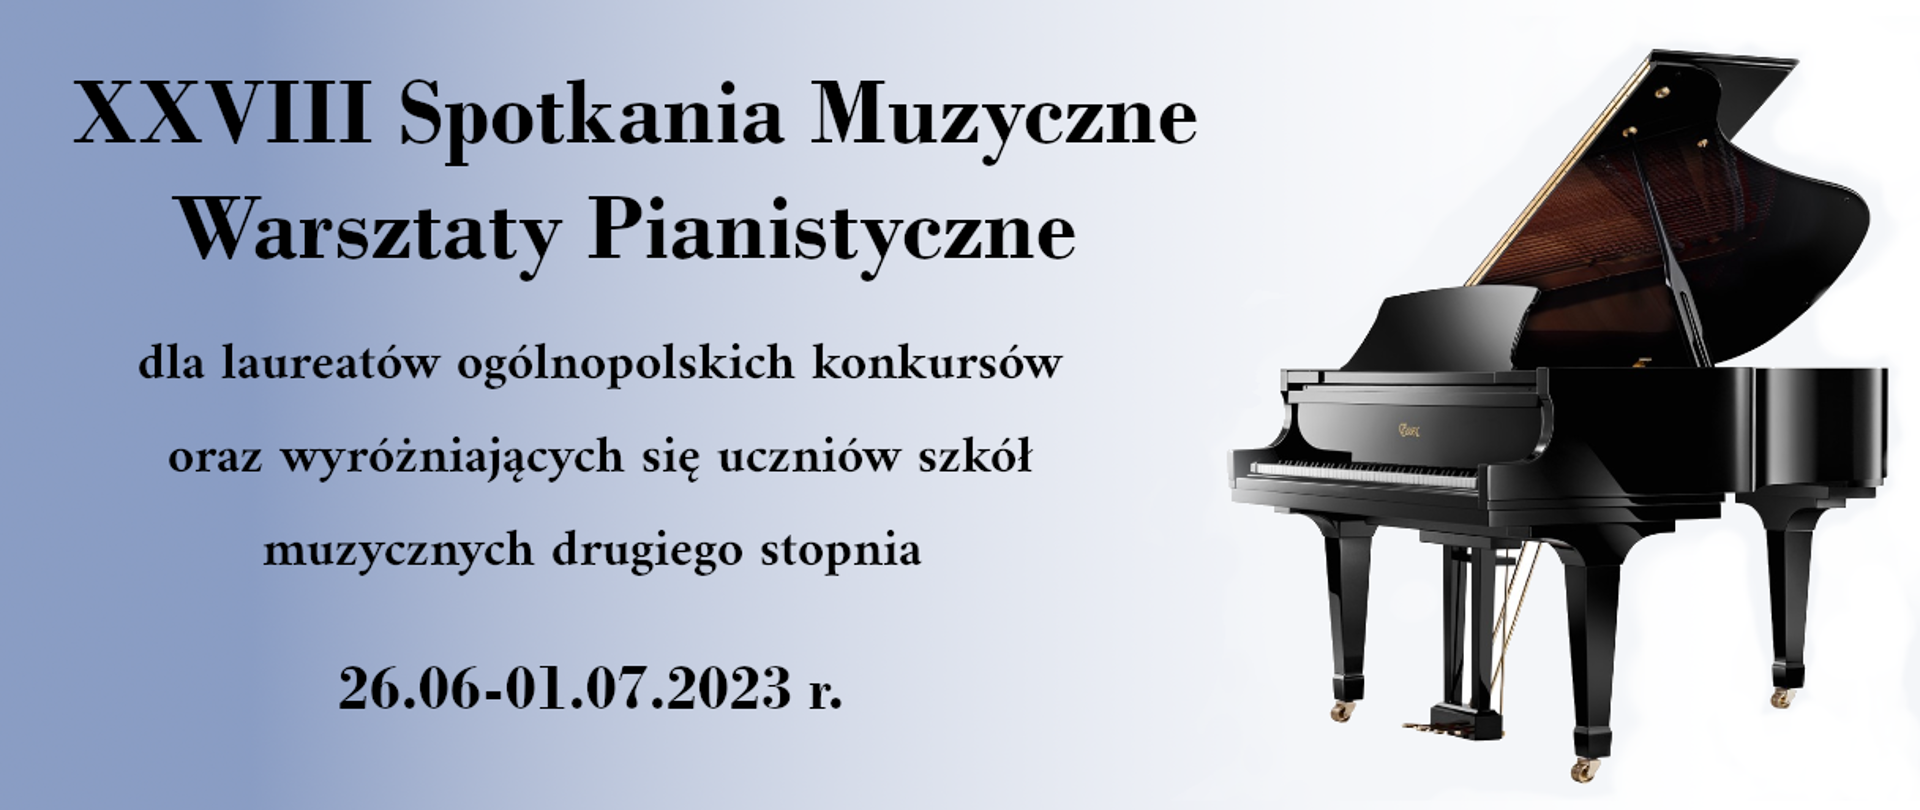 Na jasno-błękitnym tle napis XXVIII Spotkania Muzyczne Warsztaty Pianistyczne dla laureatów ogólnopolskich konkursów. Z prawej strony fotografia fortepianu. 